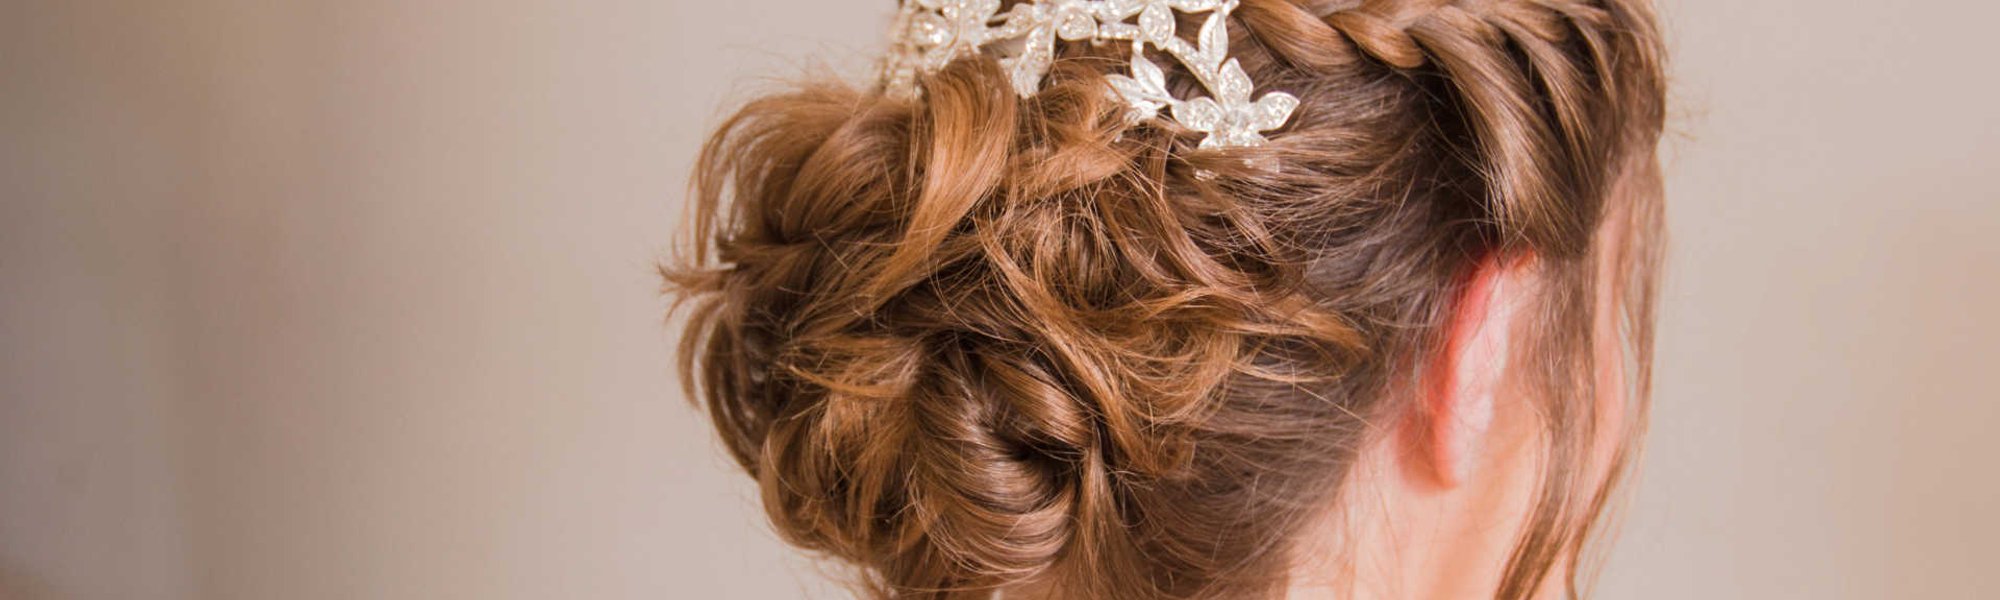 Penteado simples para casamentos e formaturas | L'Oréal Paris